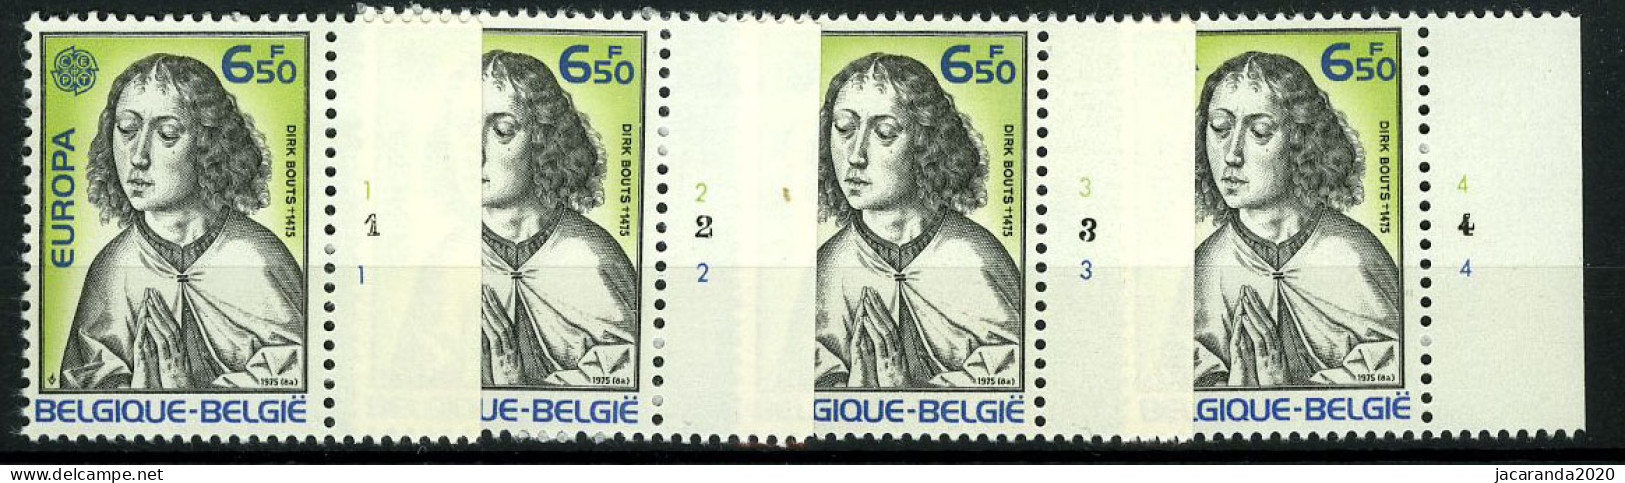 België 1766 - Europa 1975 - Plnrs 1-2-3-4 - 1971-1980